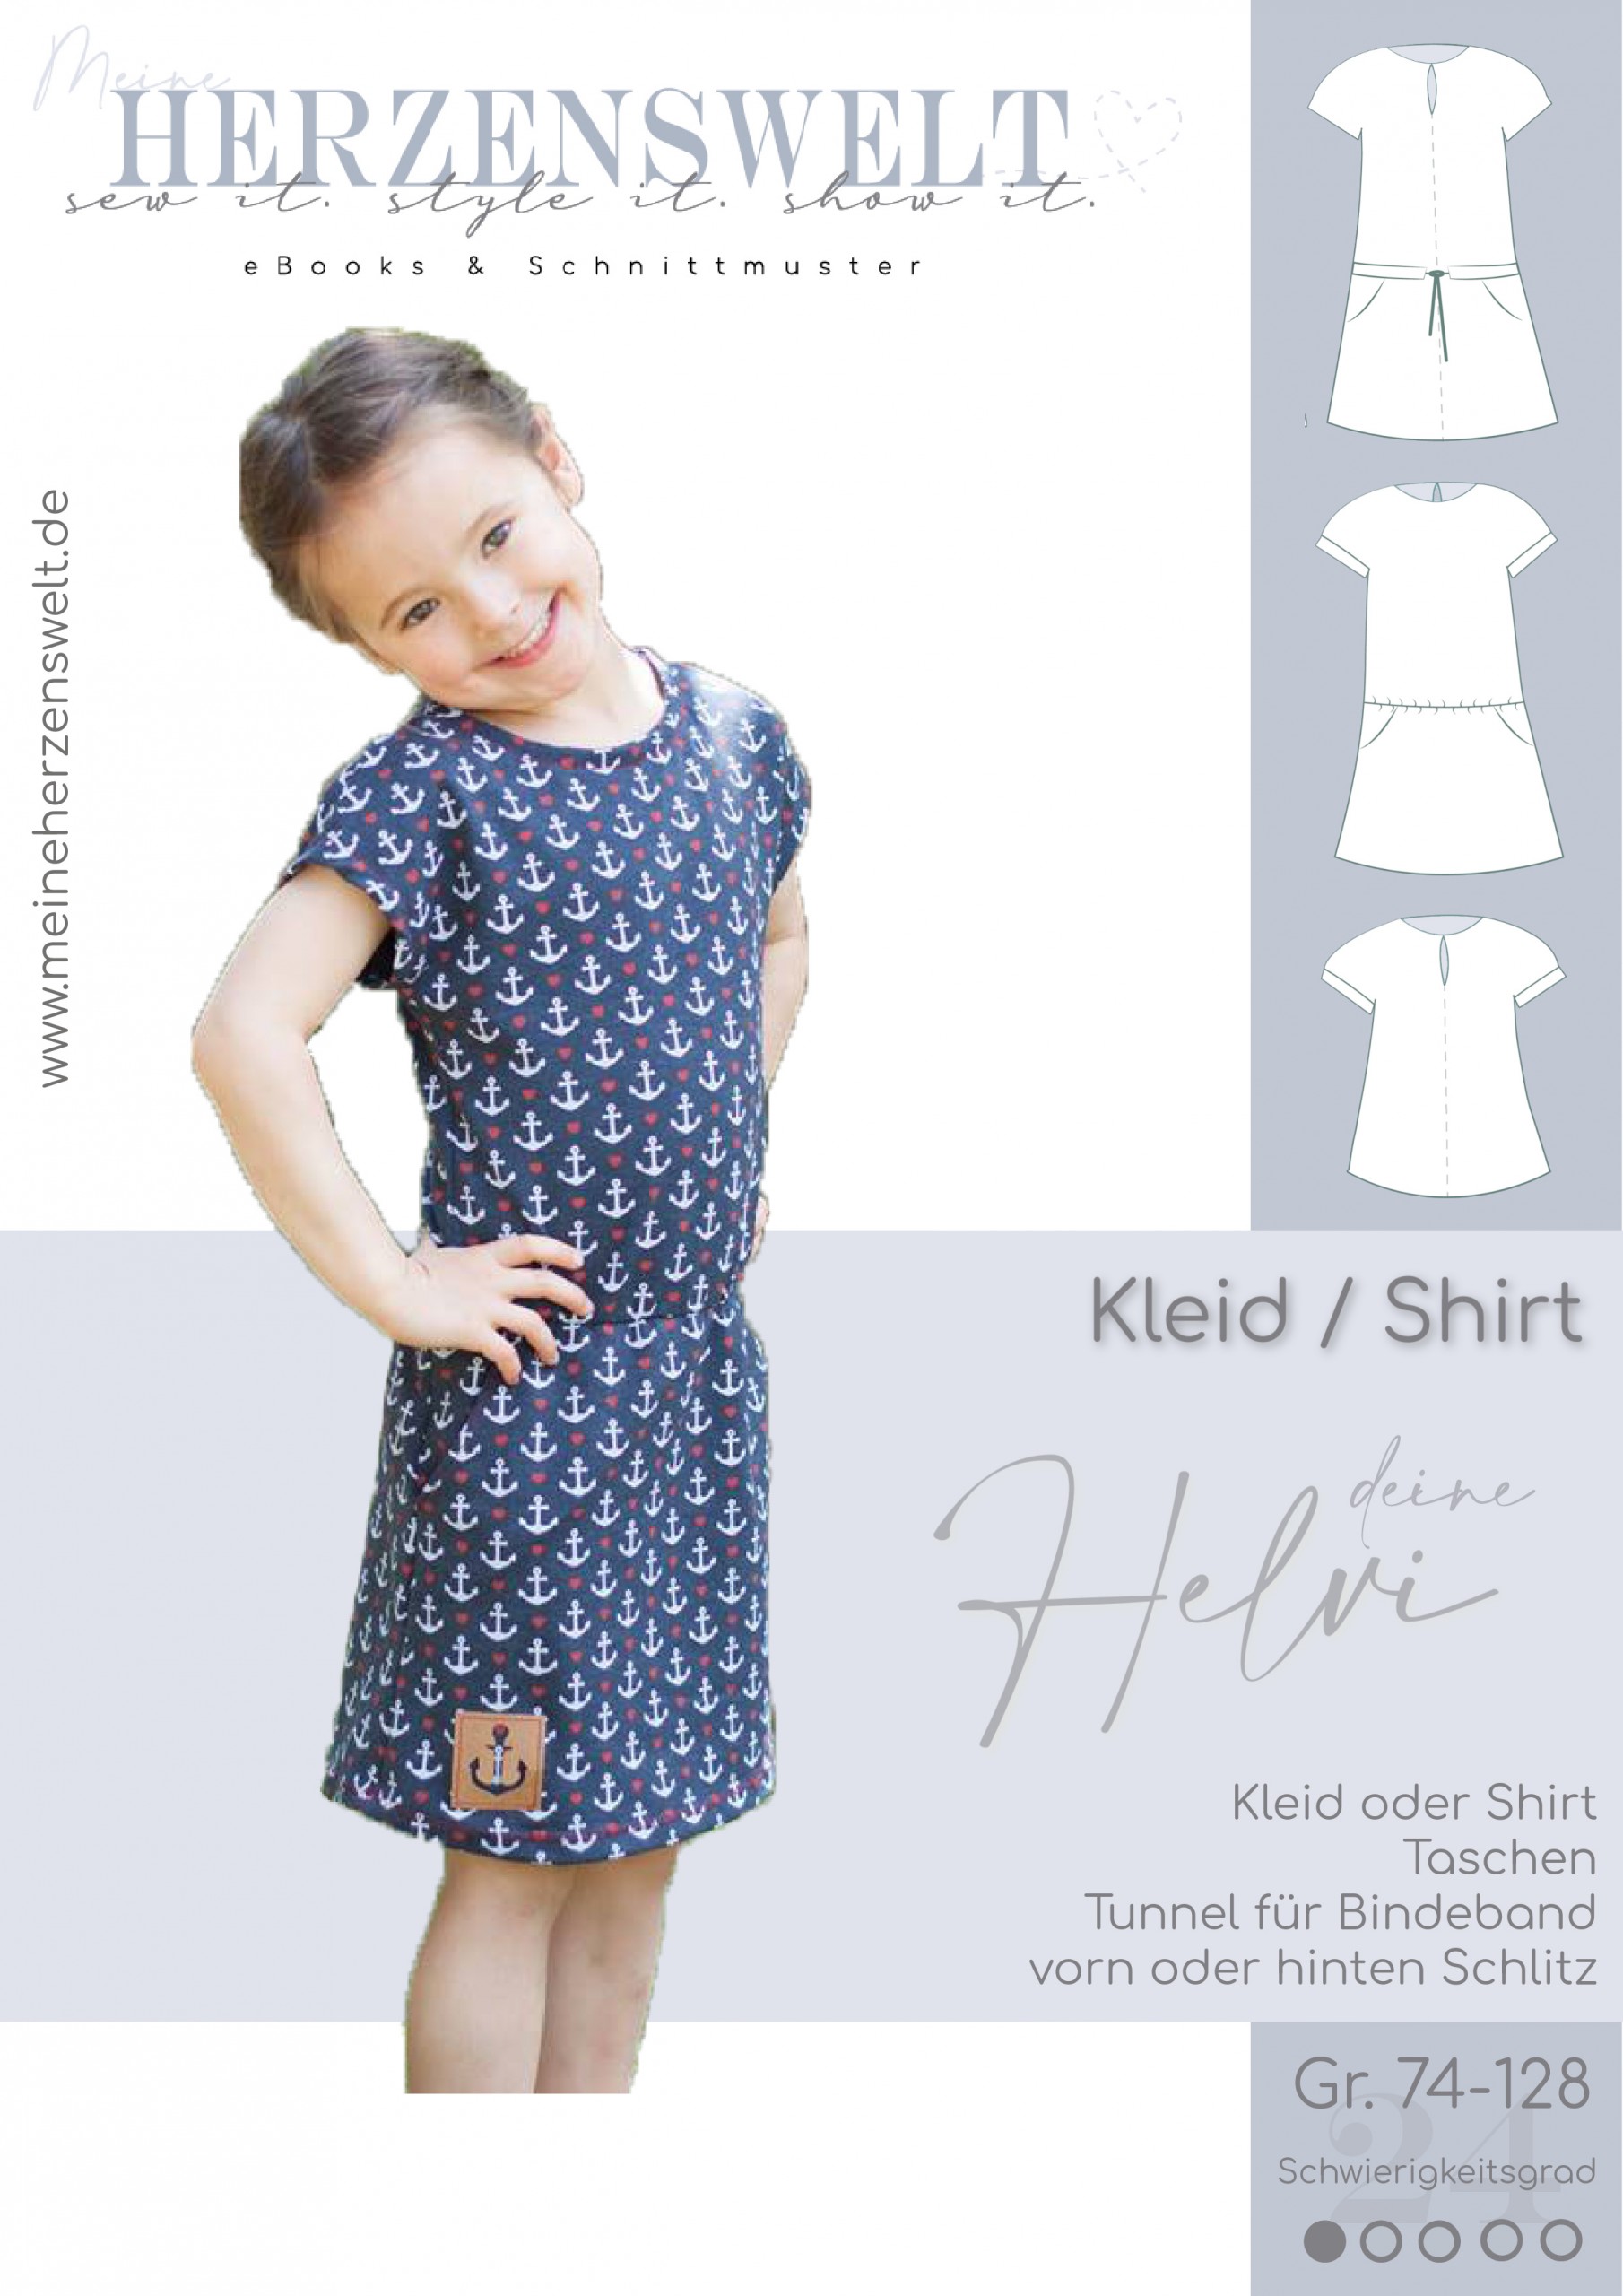 NEU Baby Mädchen Kleid La.Shirt Set Gr.74 86 92 cm Festlich von Emma Englandmode 